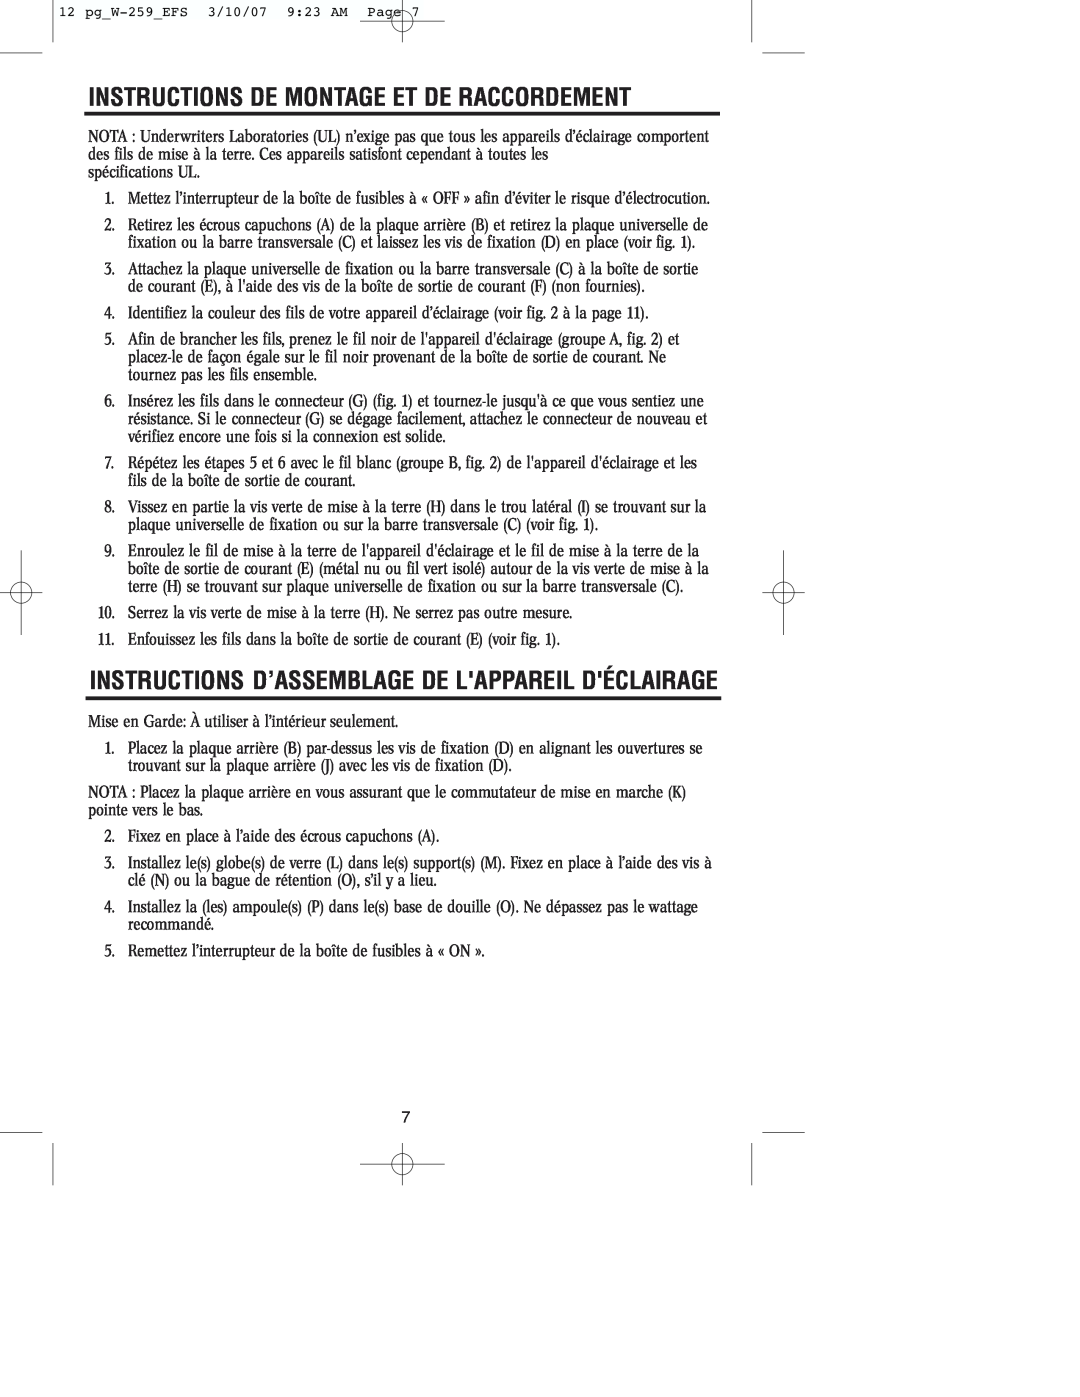 Westinghouse W-259 Instructions De Montage Et De Raccordement, Instructions D’Assemblage De Lappareil Déclairage 